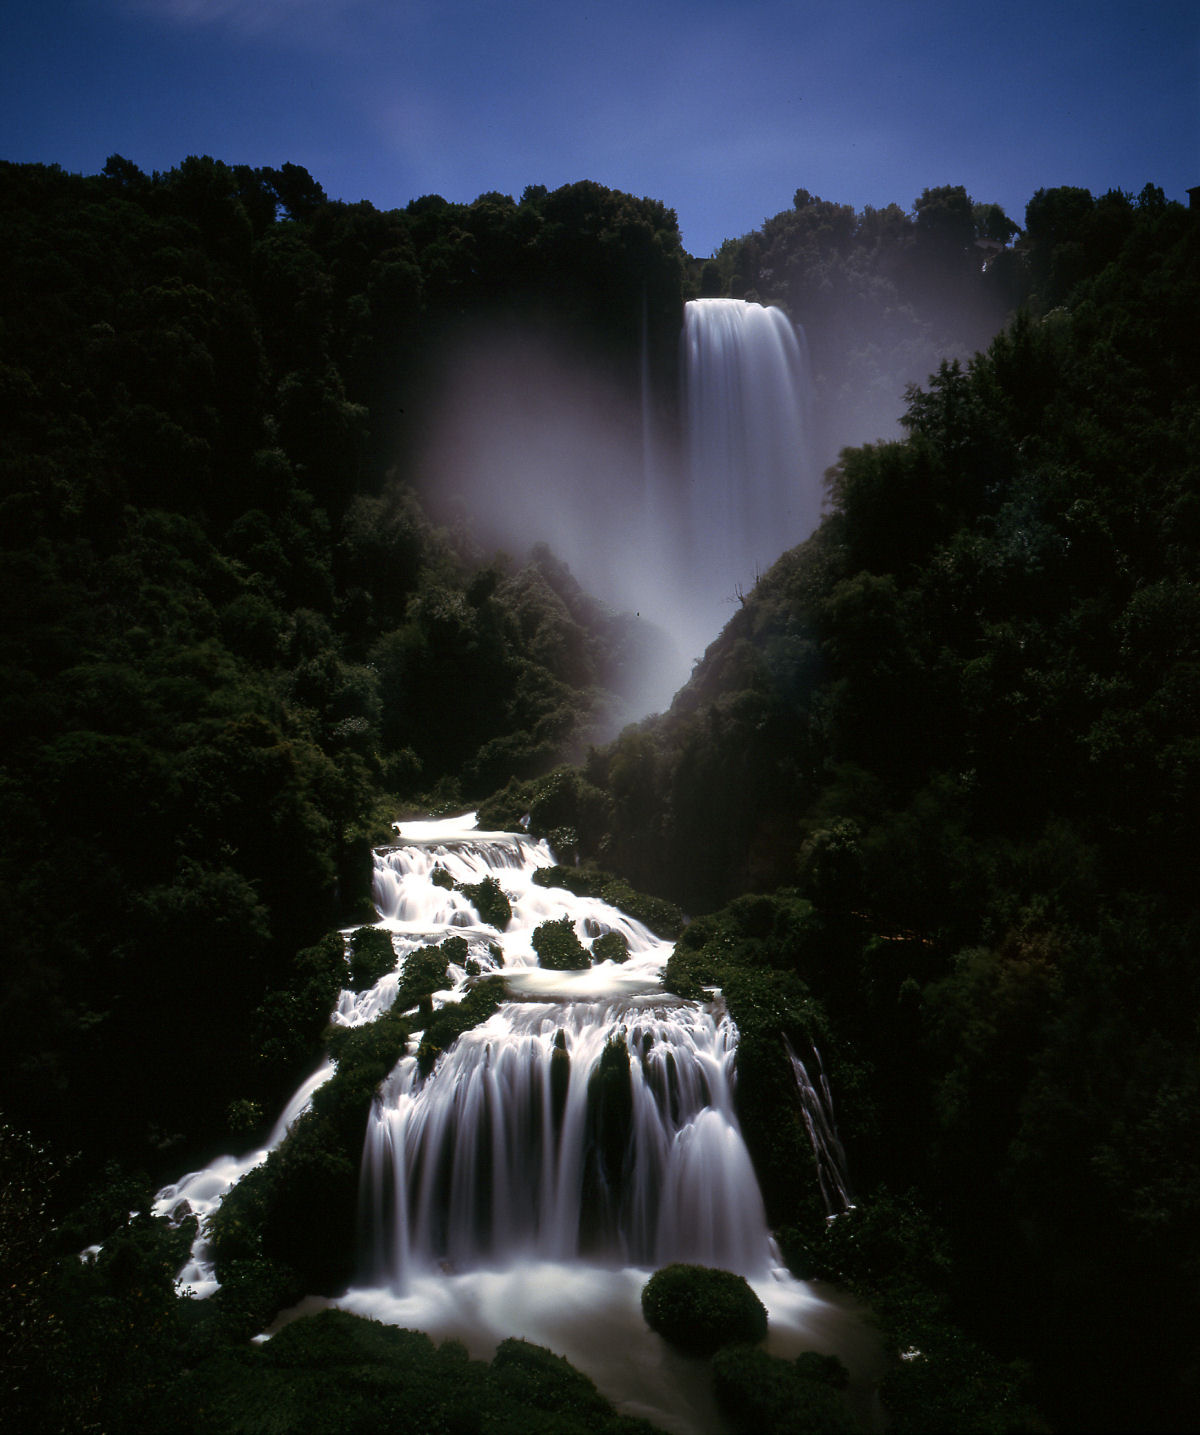 Criada pelos romanos em 271 a.C, Mármore, a cachoeira artificial mais alta do mundo